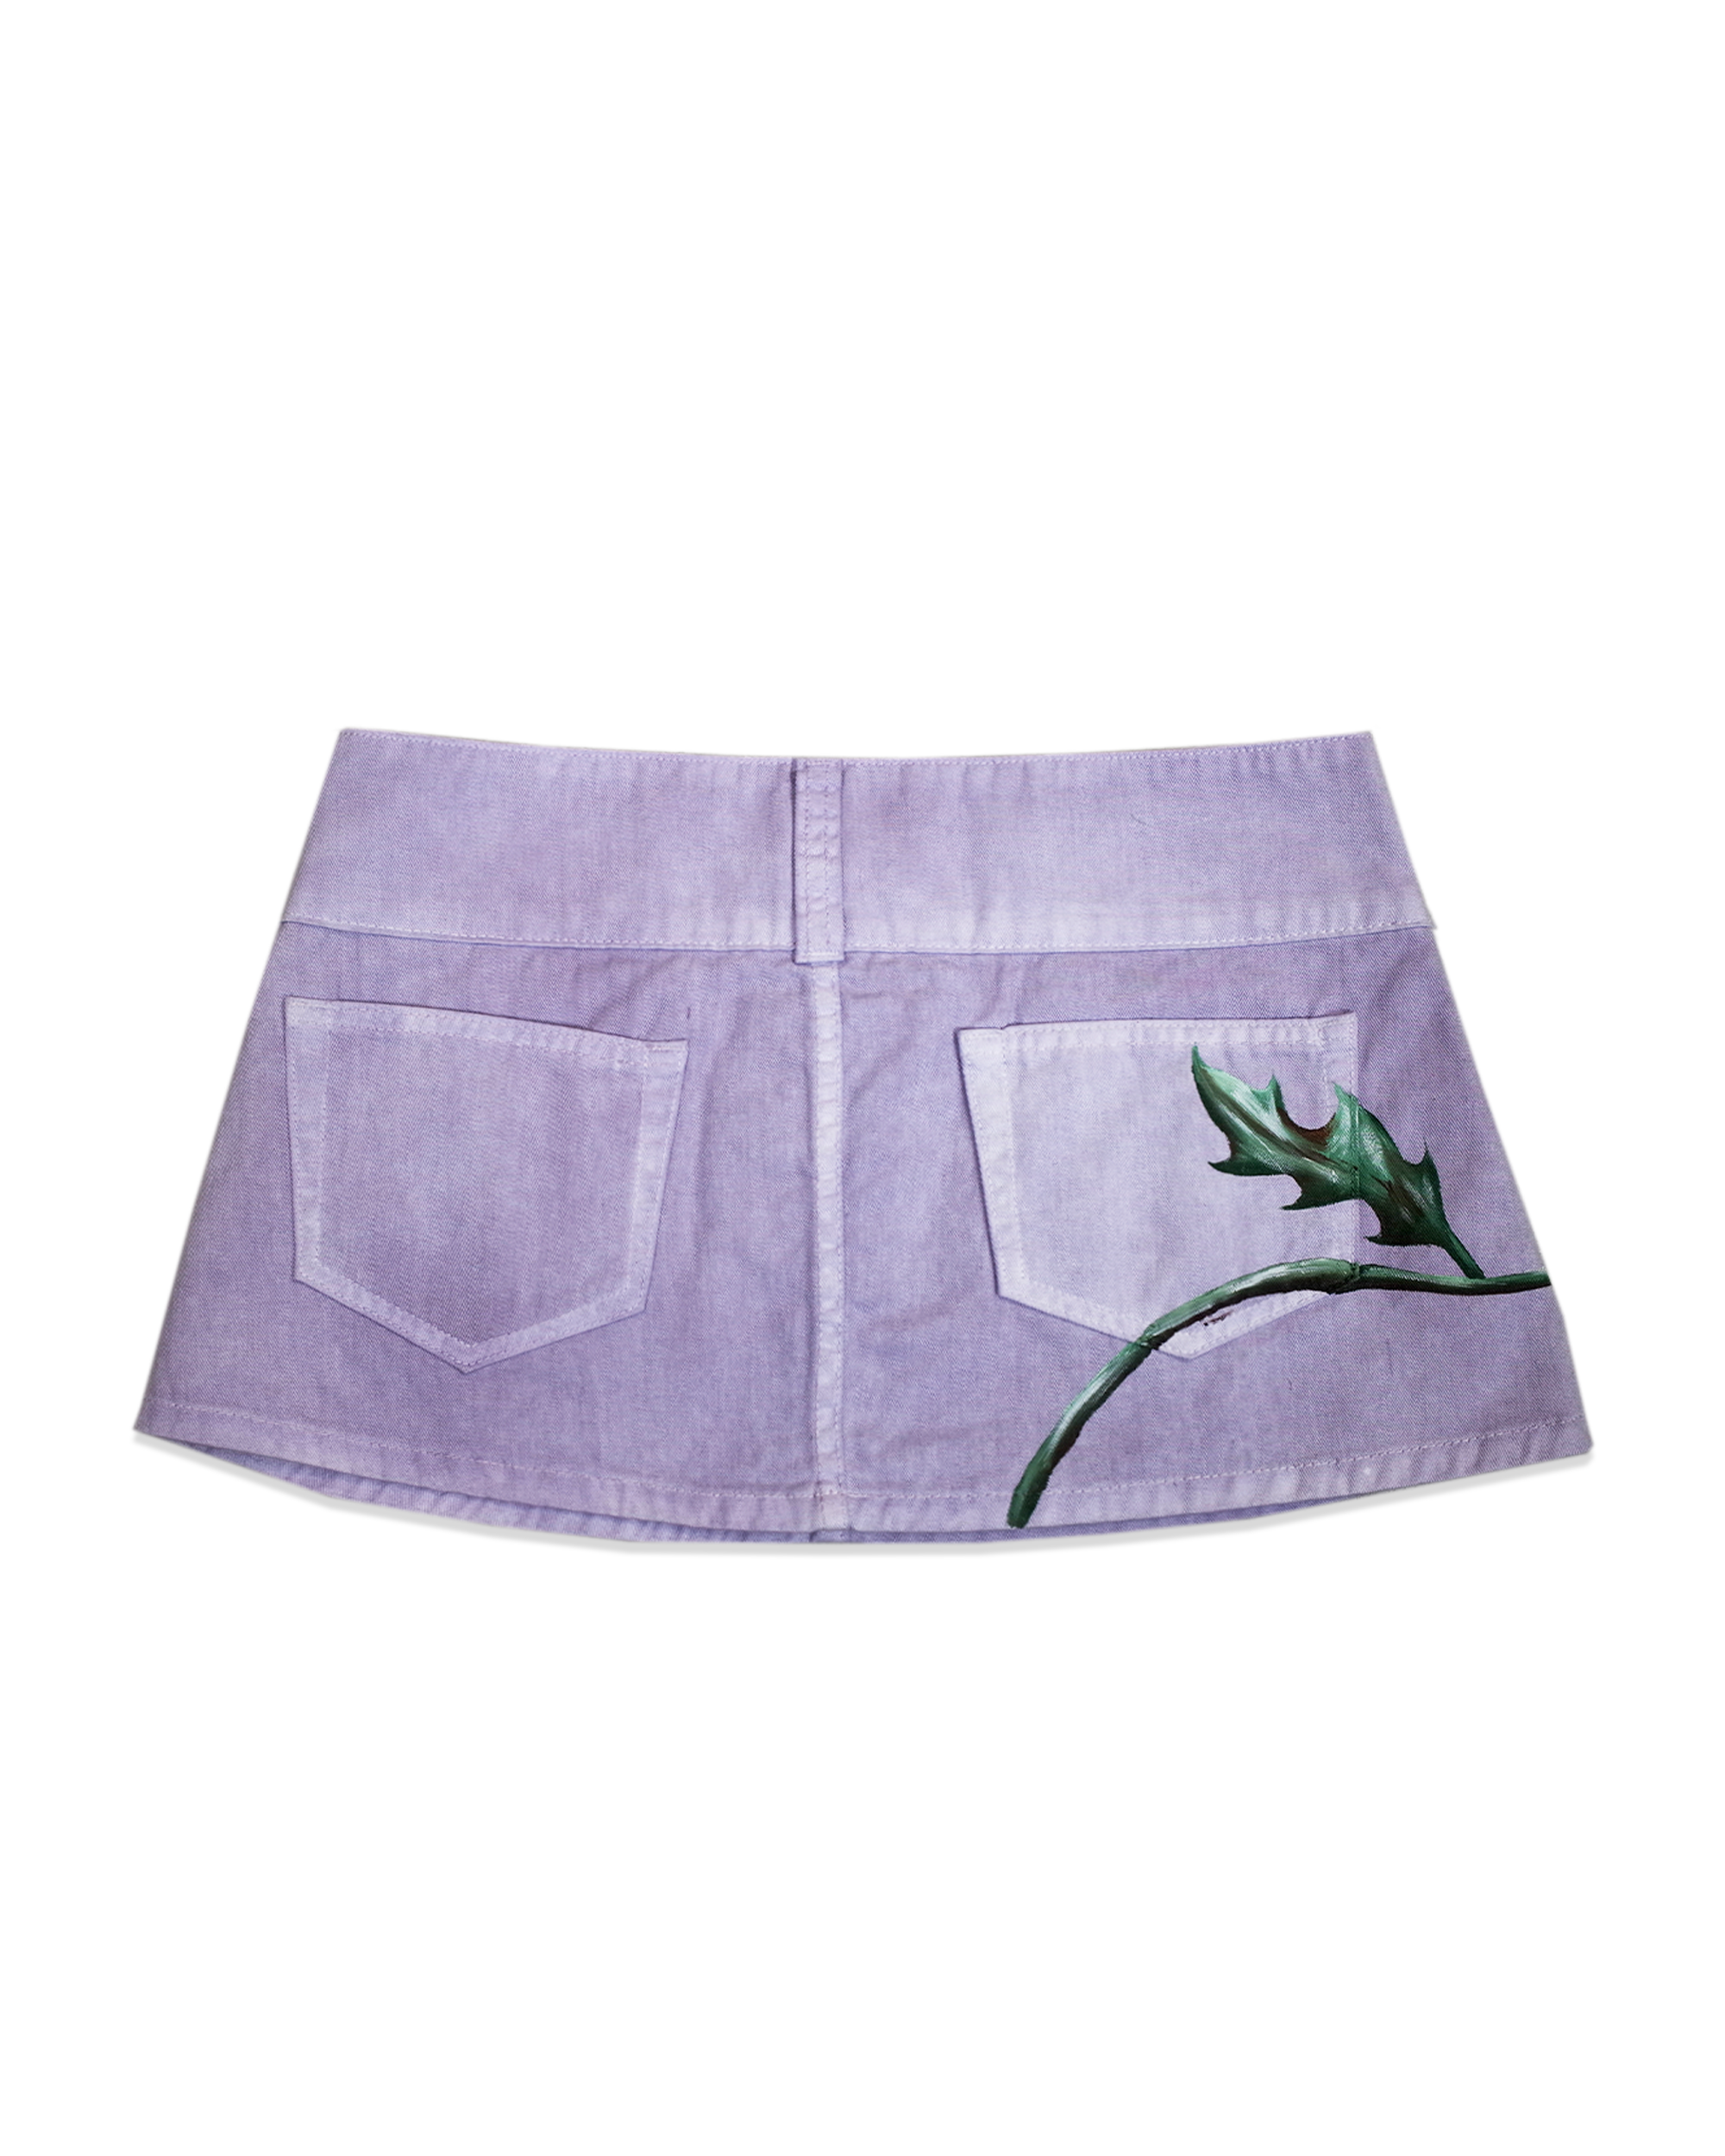 Lavender Mini Skirt from Juliet Johnstone